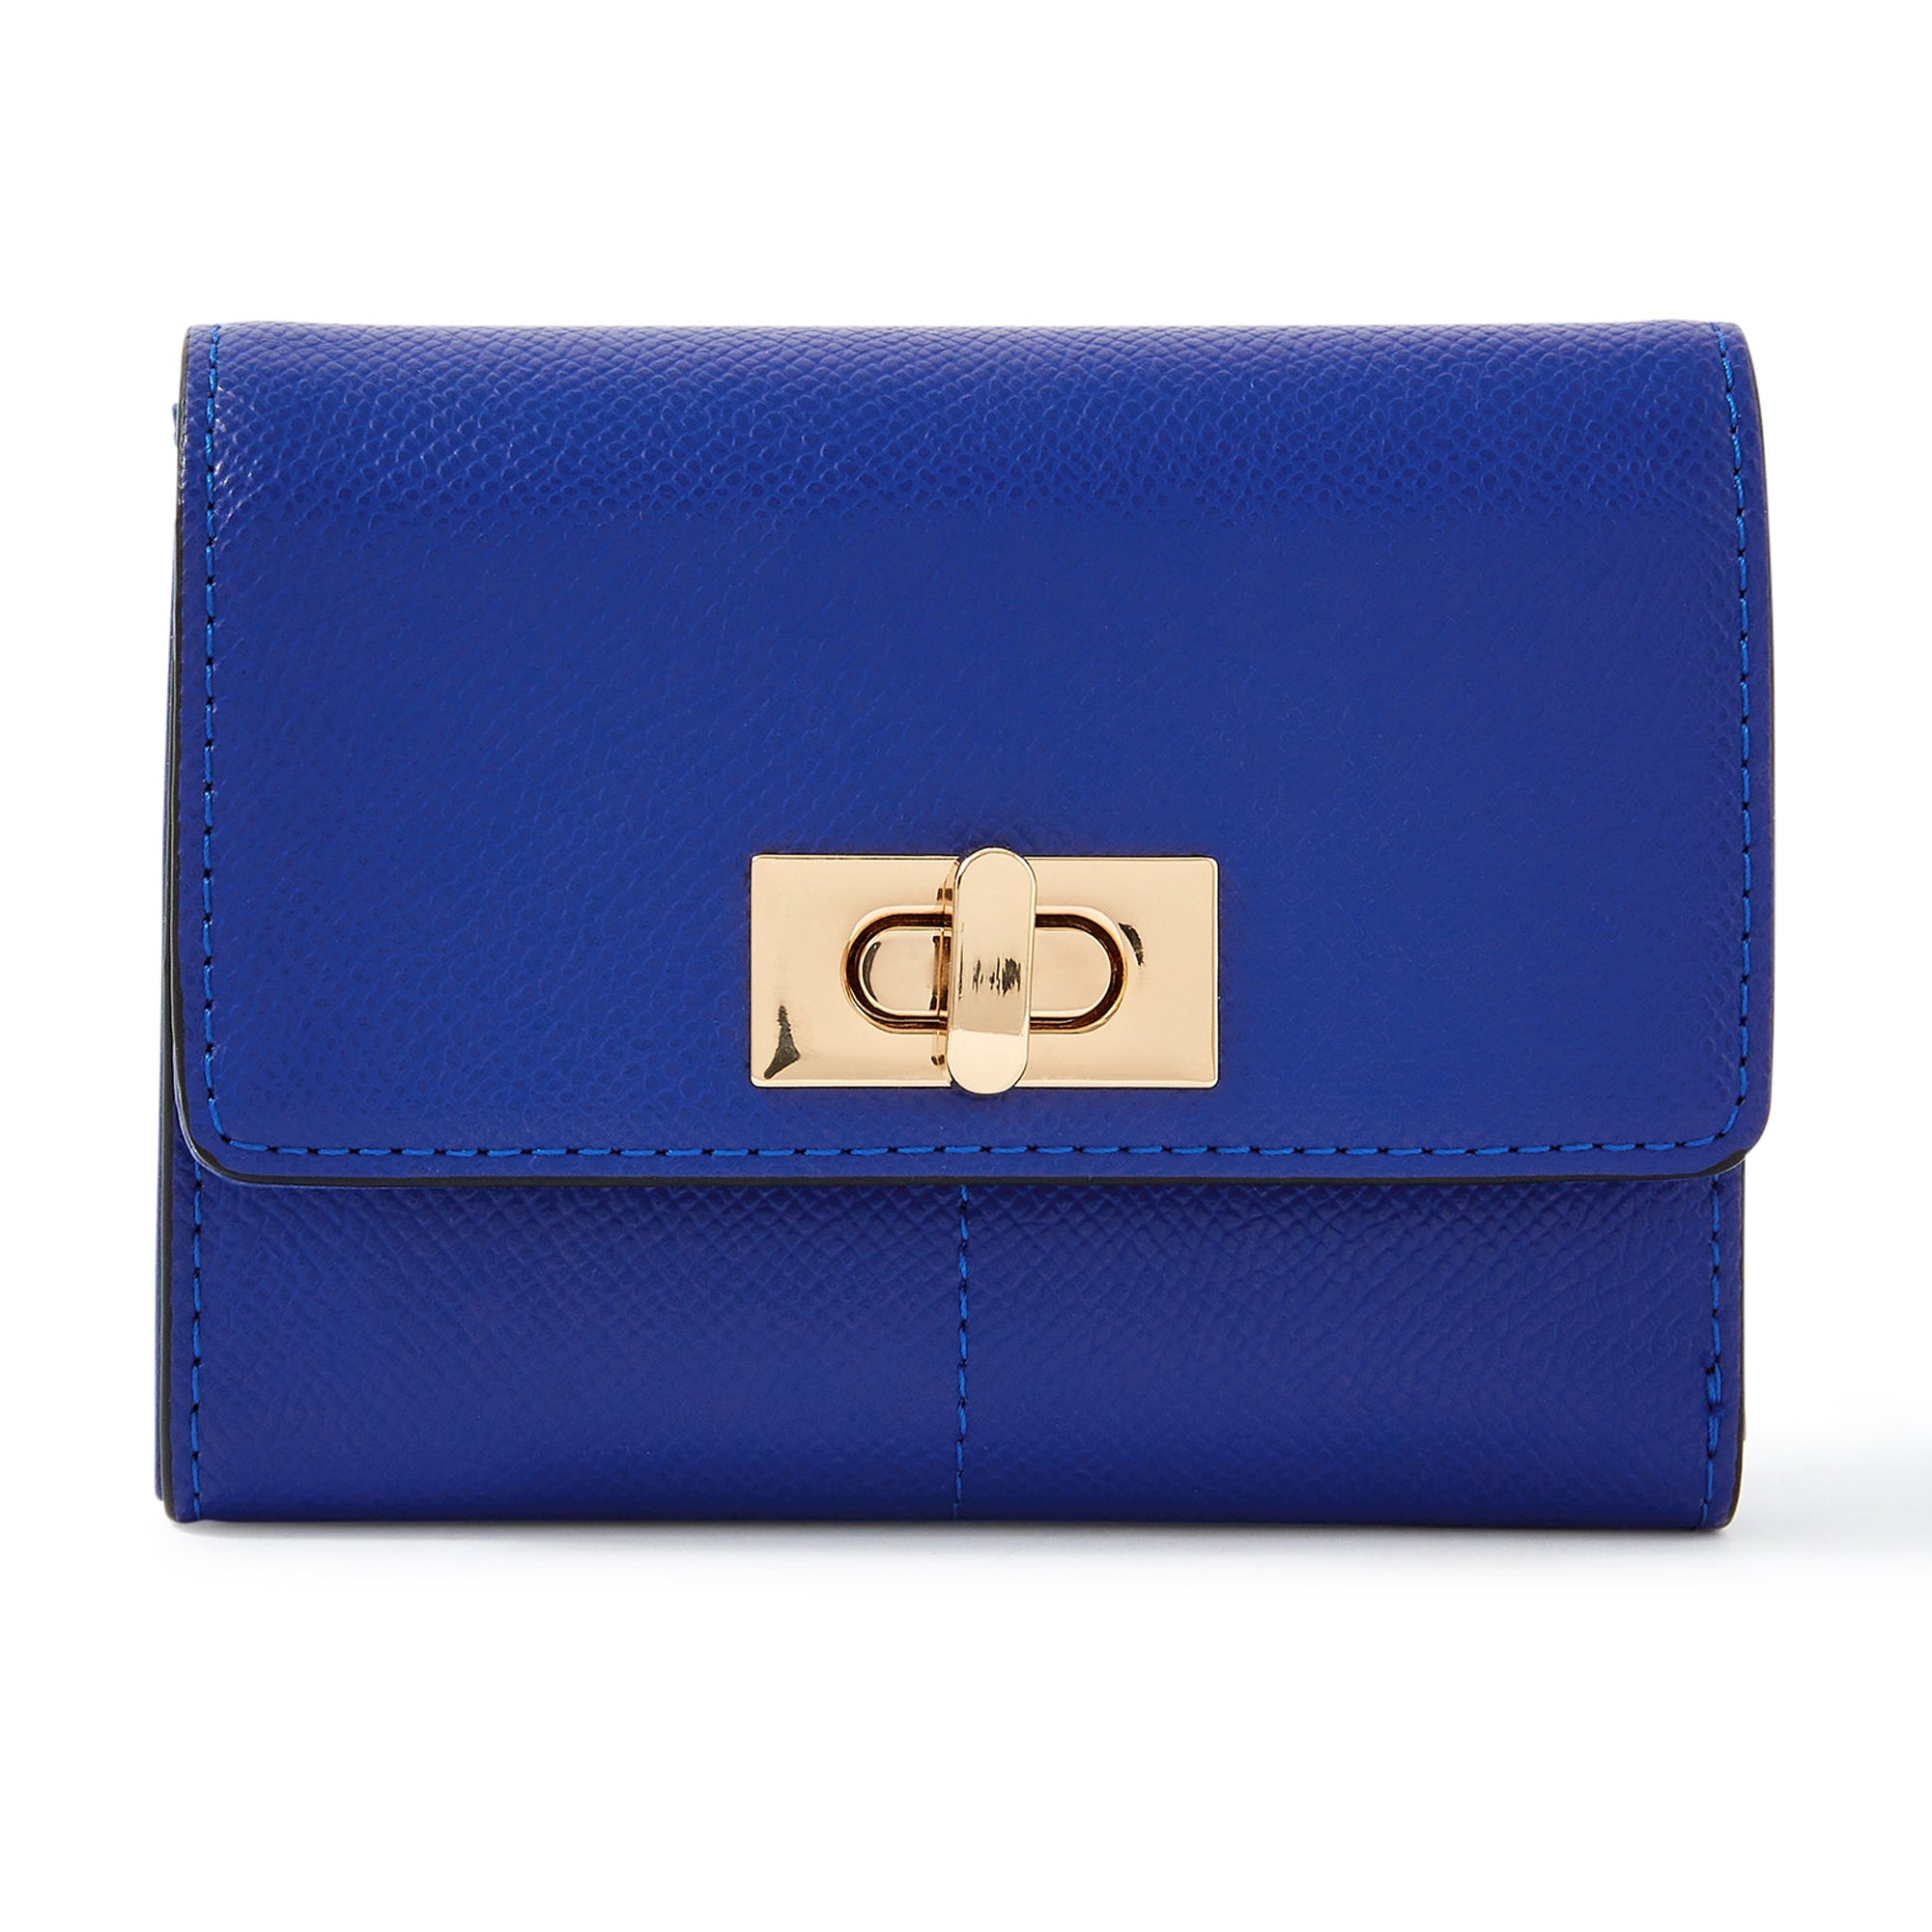 Accessorize London Women's Faux Leather Sandra Wallet - Blue